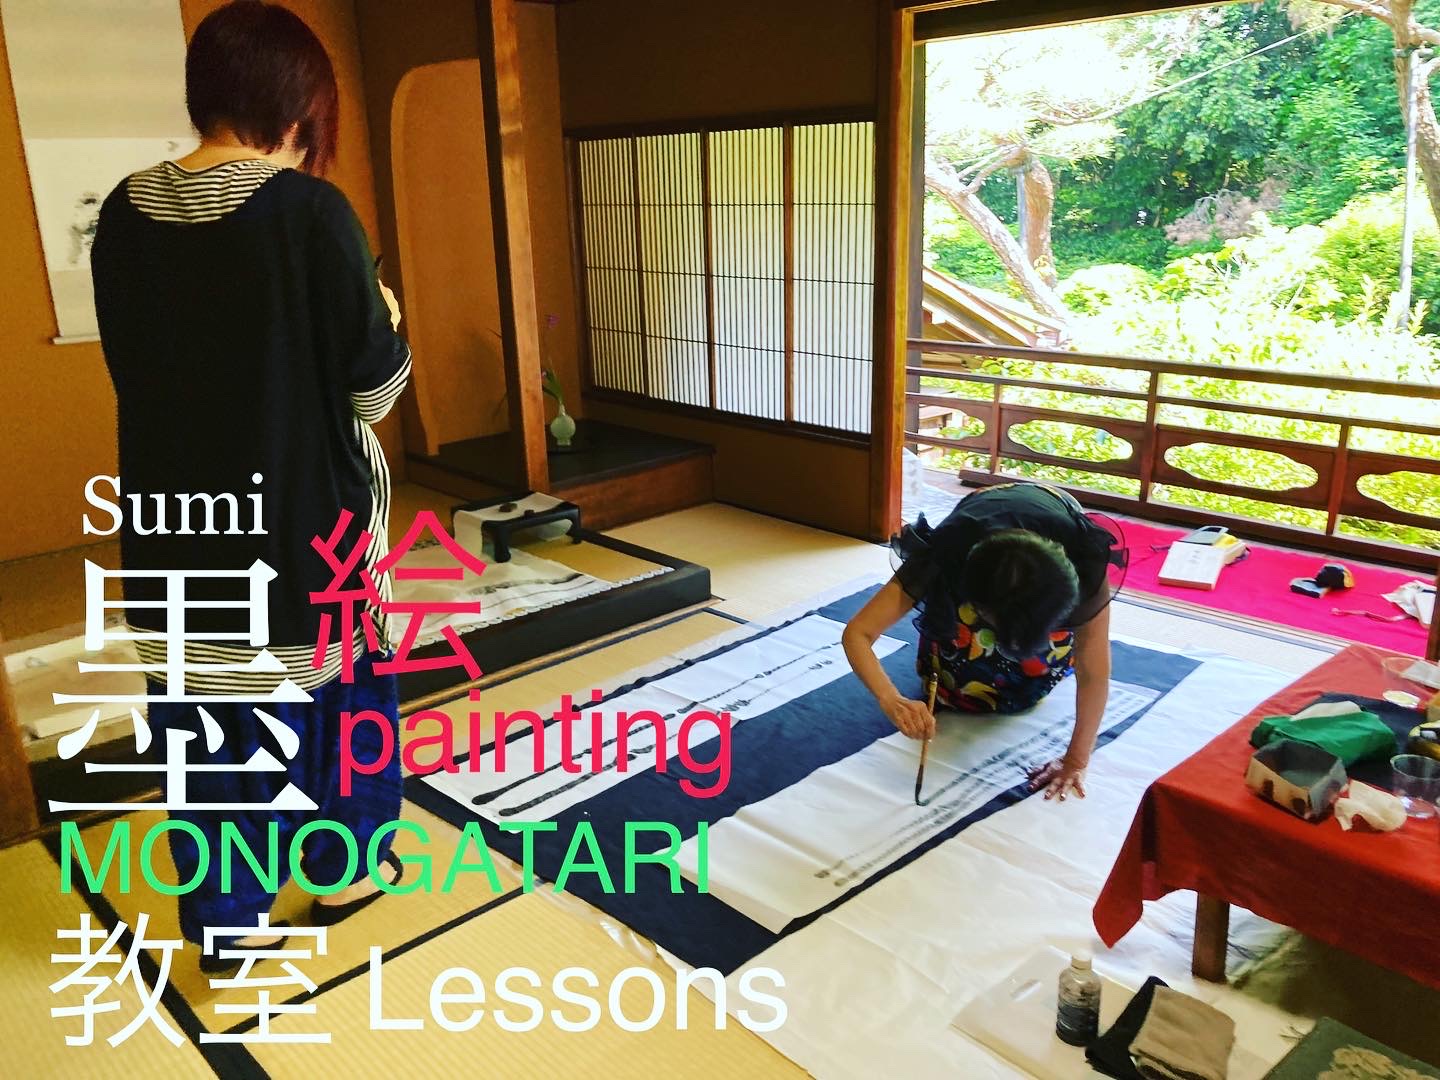 “Sumi-painting MONOGATARI Lessons” Scheduled